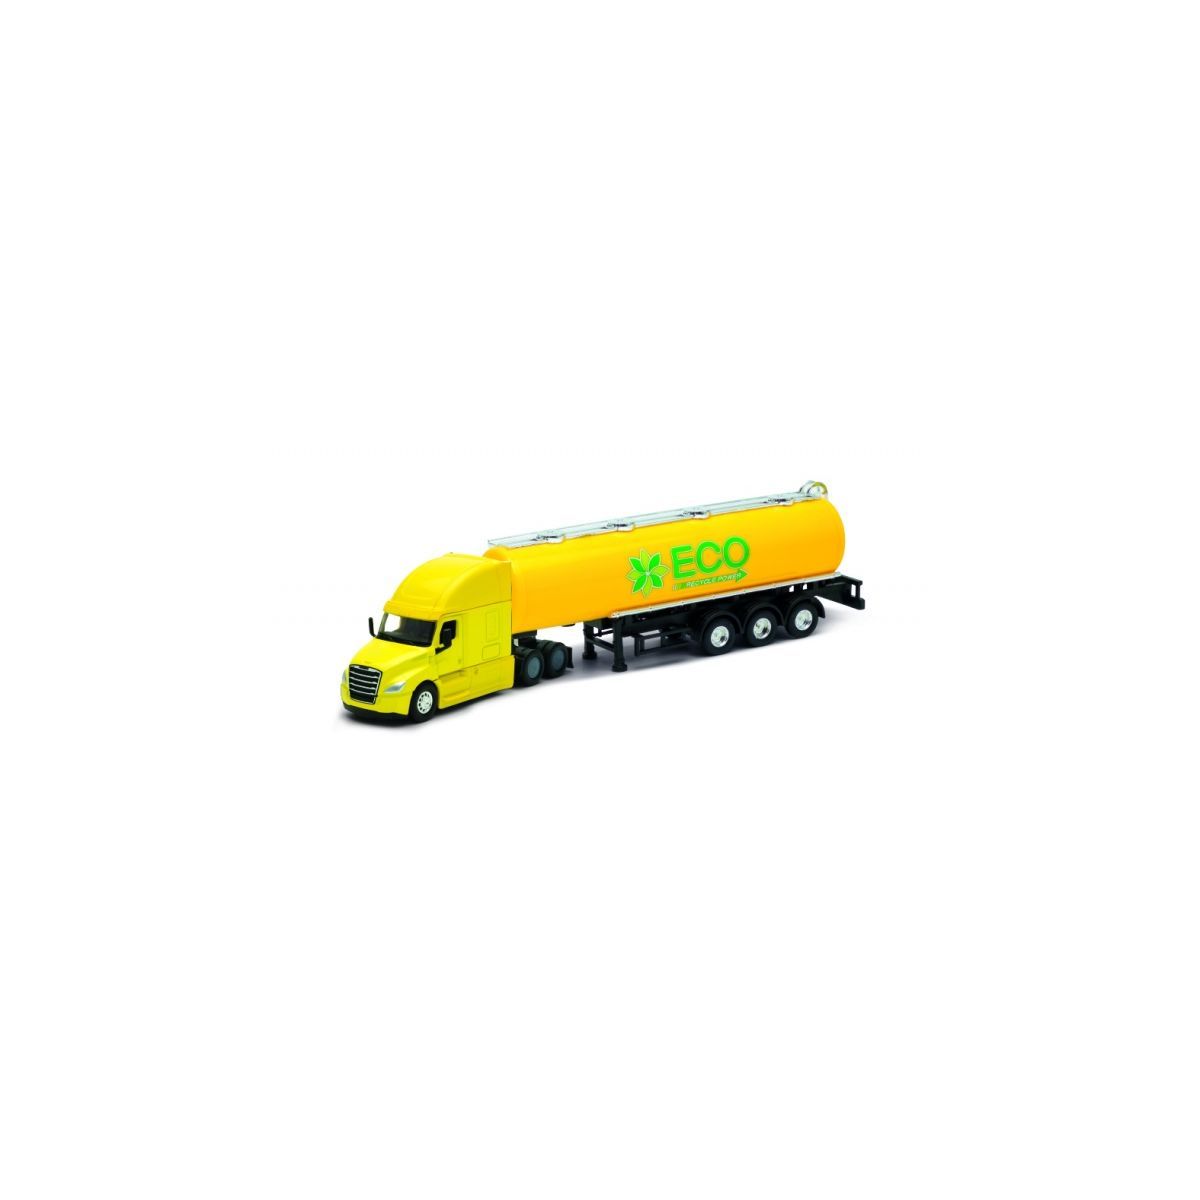 Ciężarówka Welly Truck z przyczepą 1:64 Freightliner Cascadia cysterna Dromader (58010)